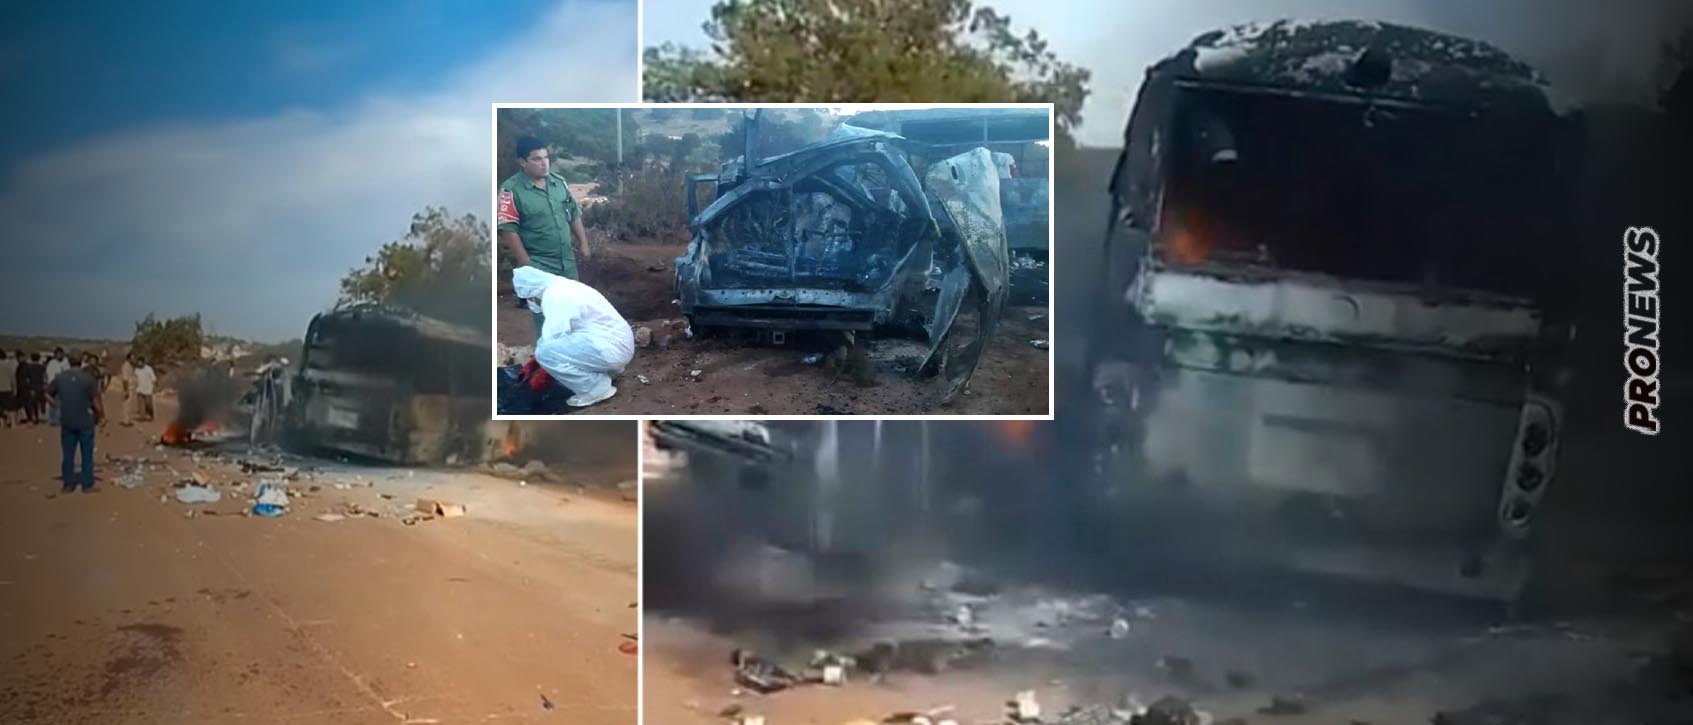 Στέλεχος της αποστολής στην Λιβύη «δείχνει» επίθεση: «Πριν μας κτυπήσουν εξαφανίστηκε το προπορευόμενο όχημα ασφαλείας»